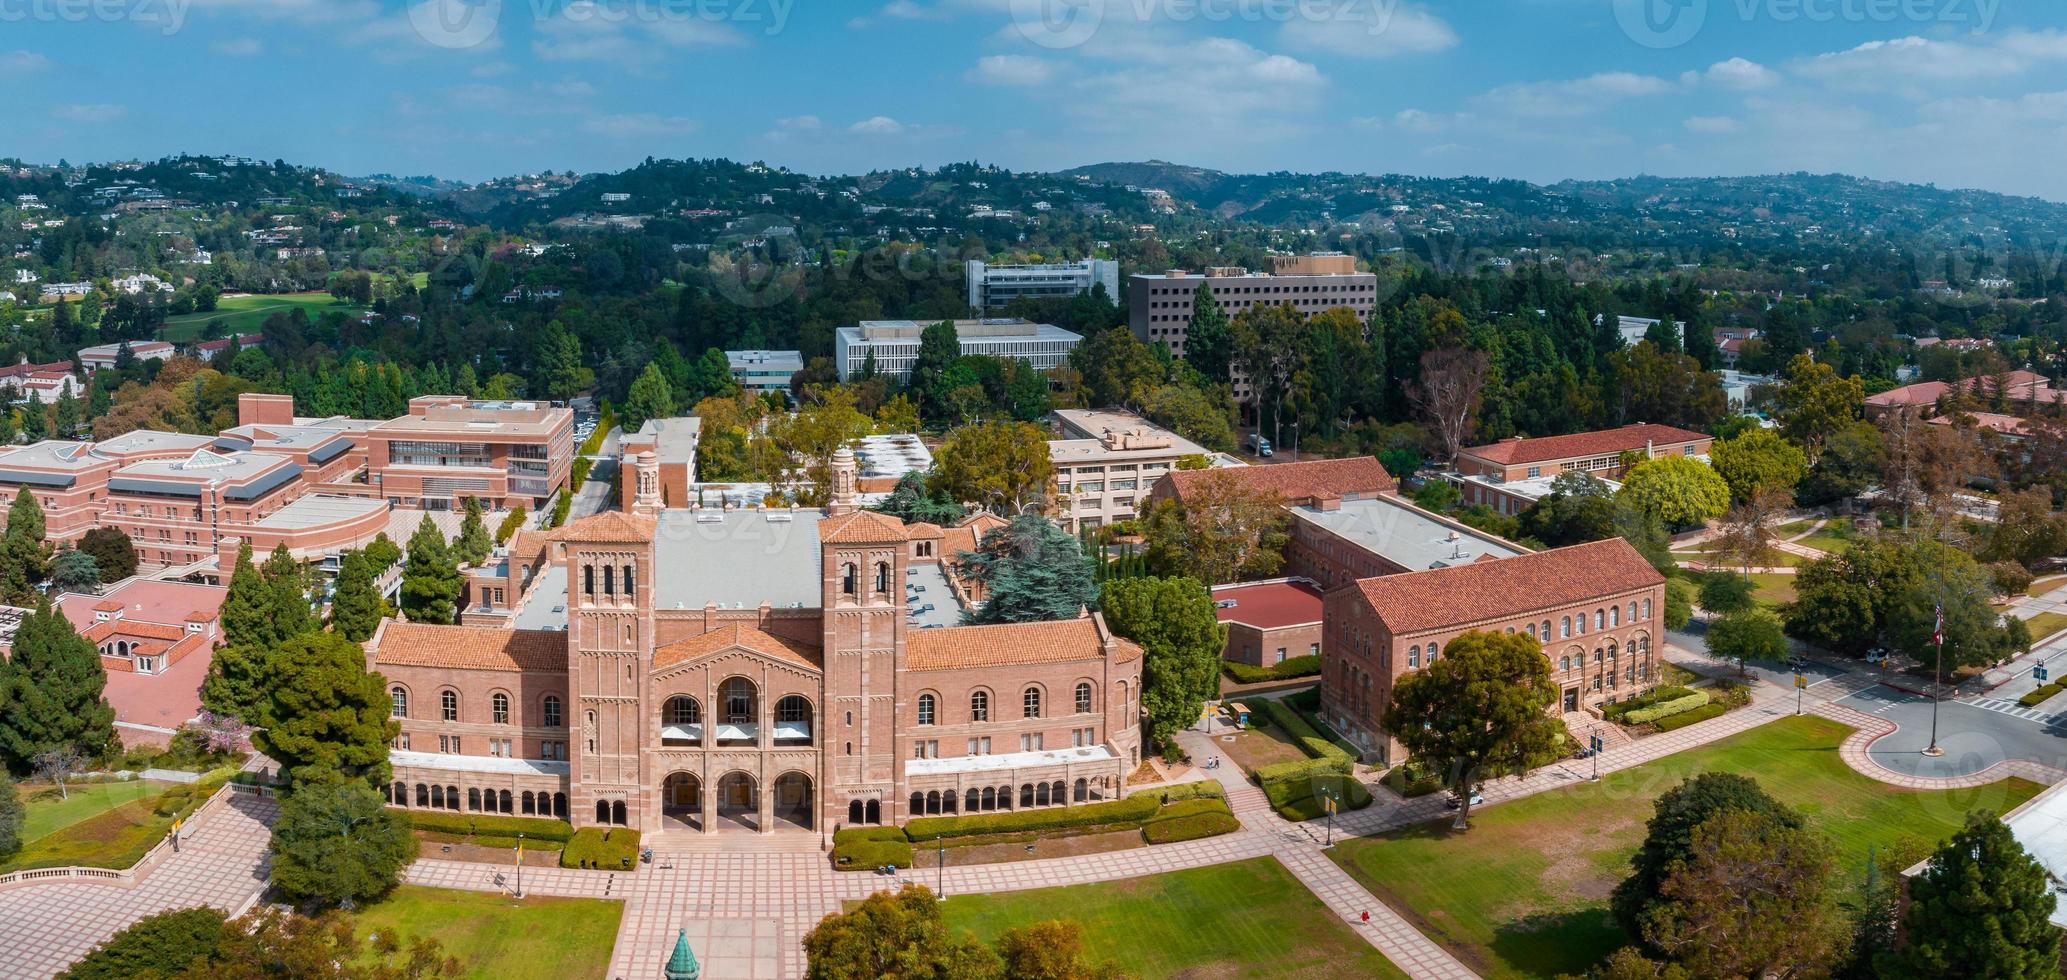 vue aérienne du royce hall de l'université de californie, los angeles photo